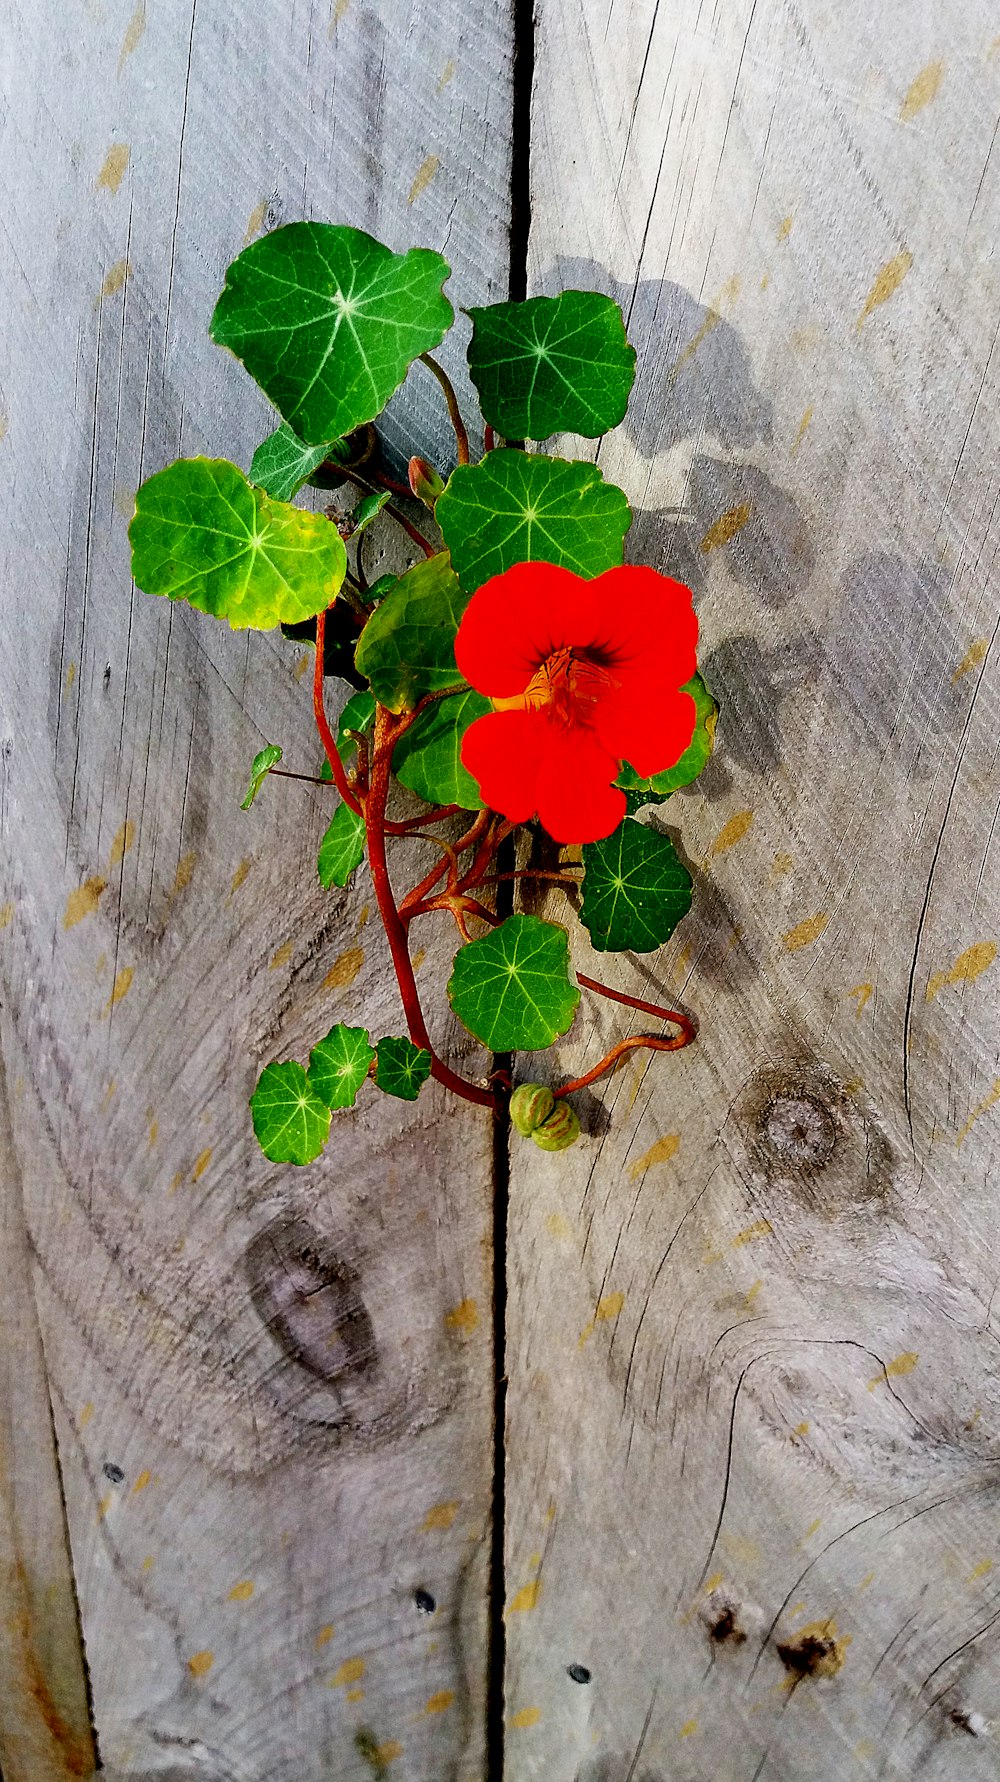 flor roja sobre superficie de madera gris